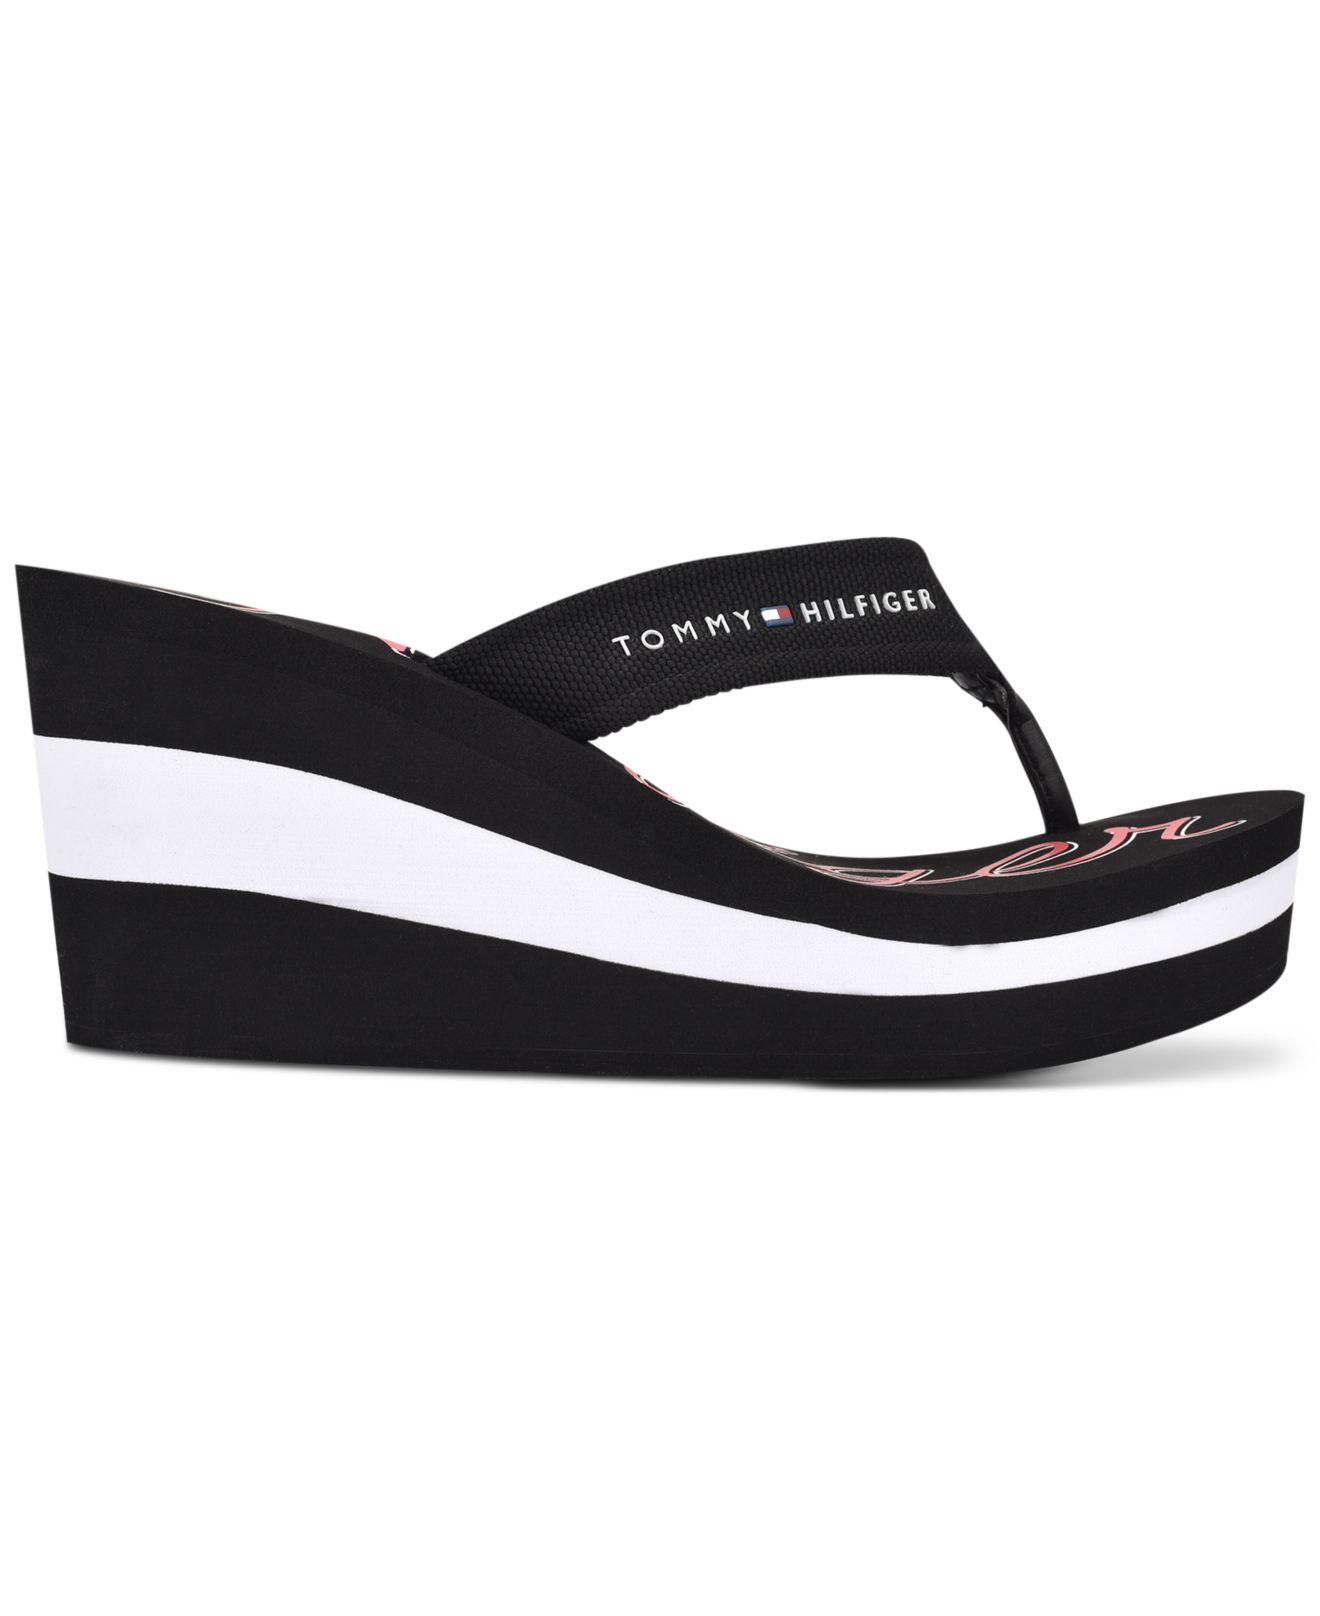 Tommy Hilfiger Sayla Flip-flop Sandals in Black fb (Black) - Lyst